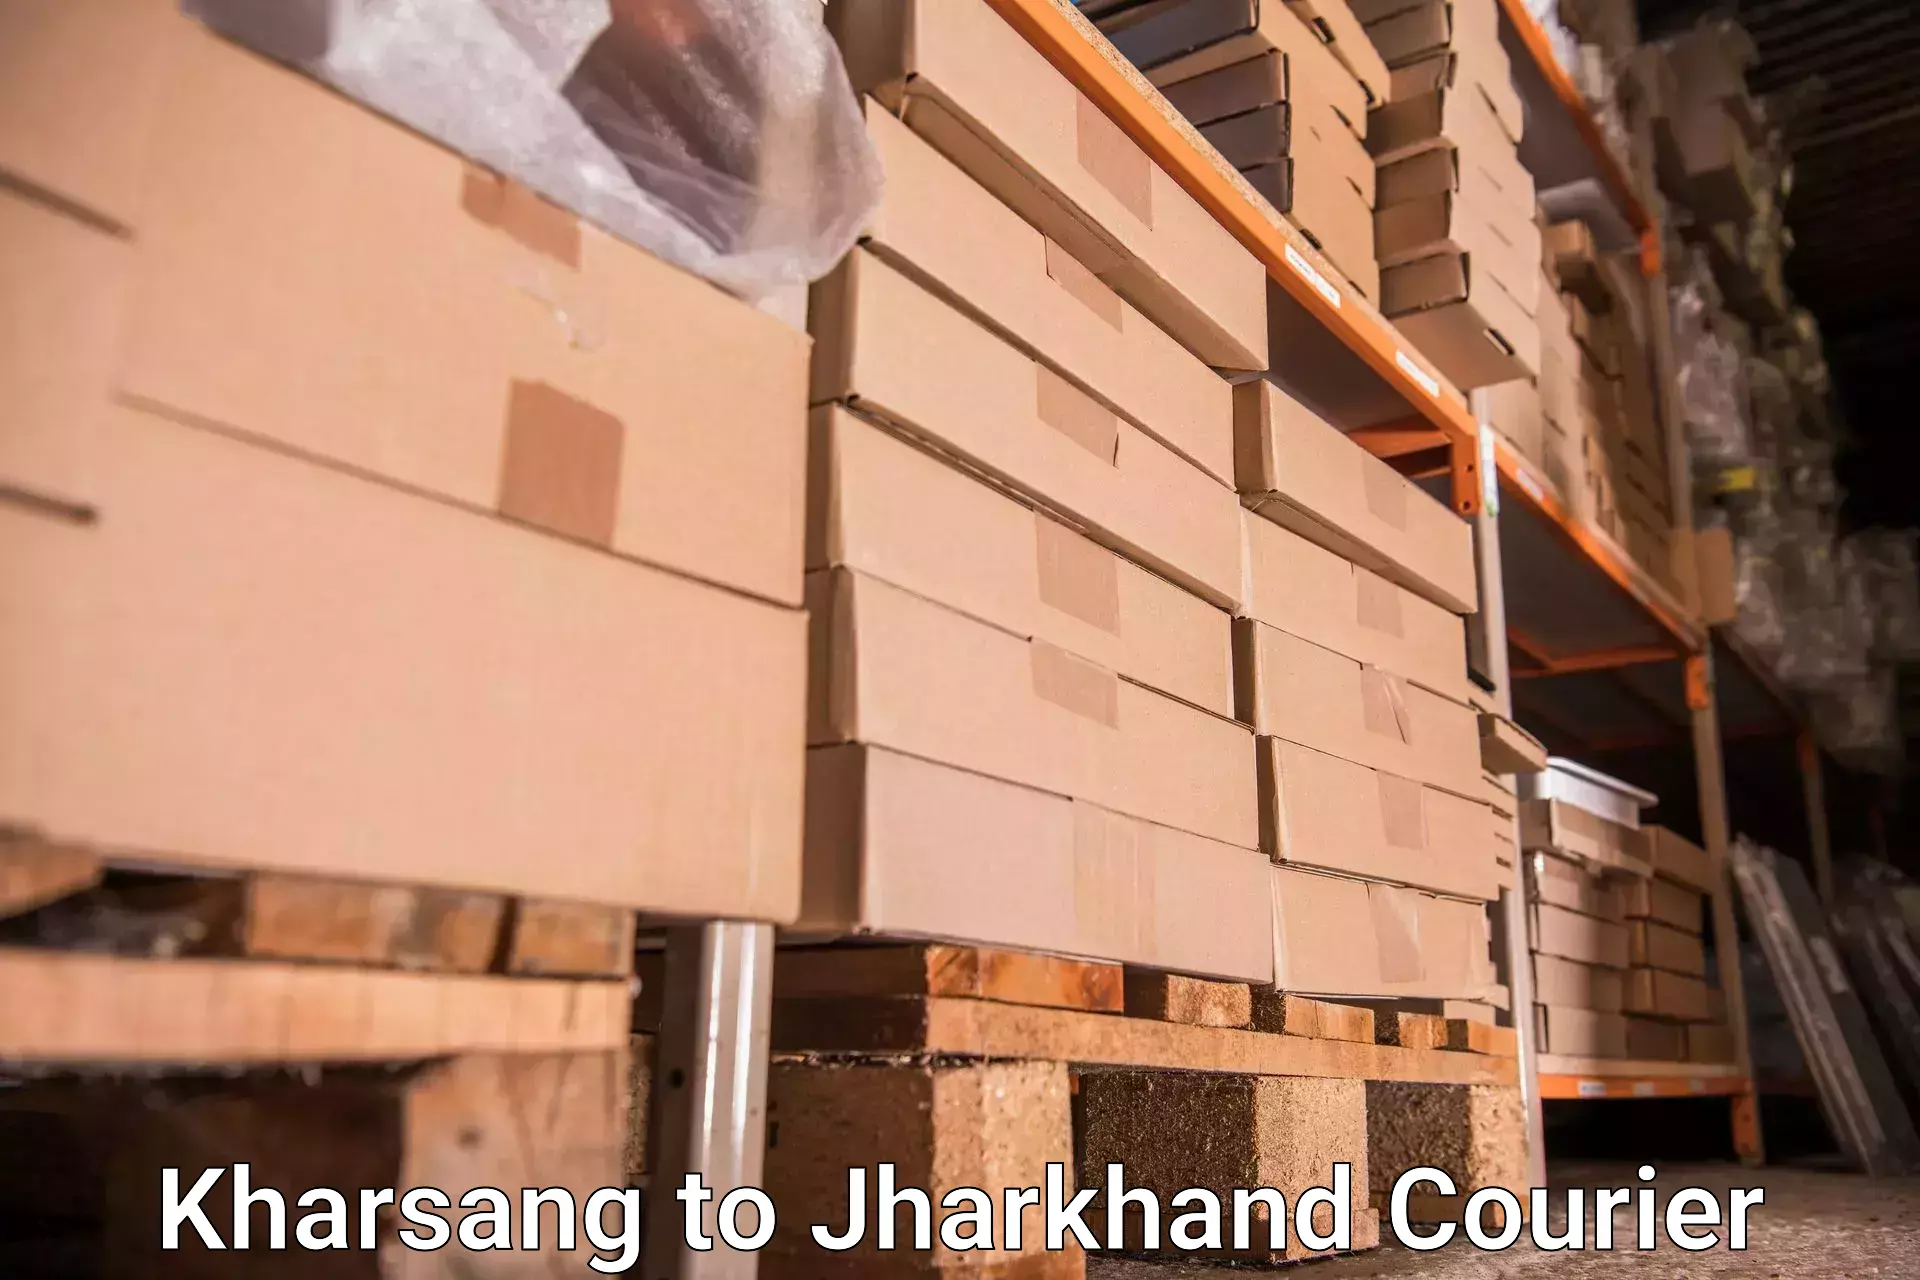 Baggage shipping experts Kharsang to Dhanbad